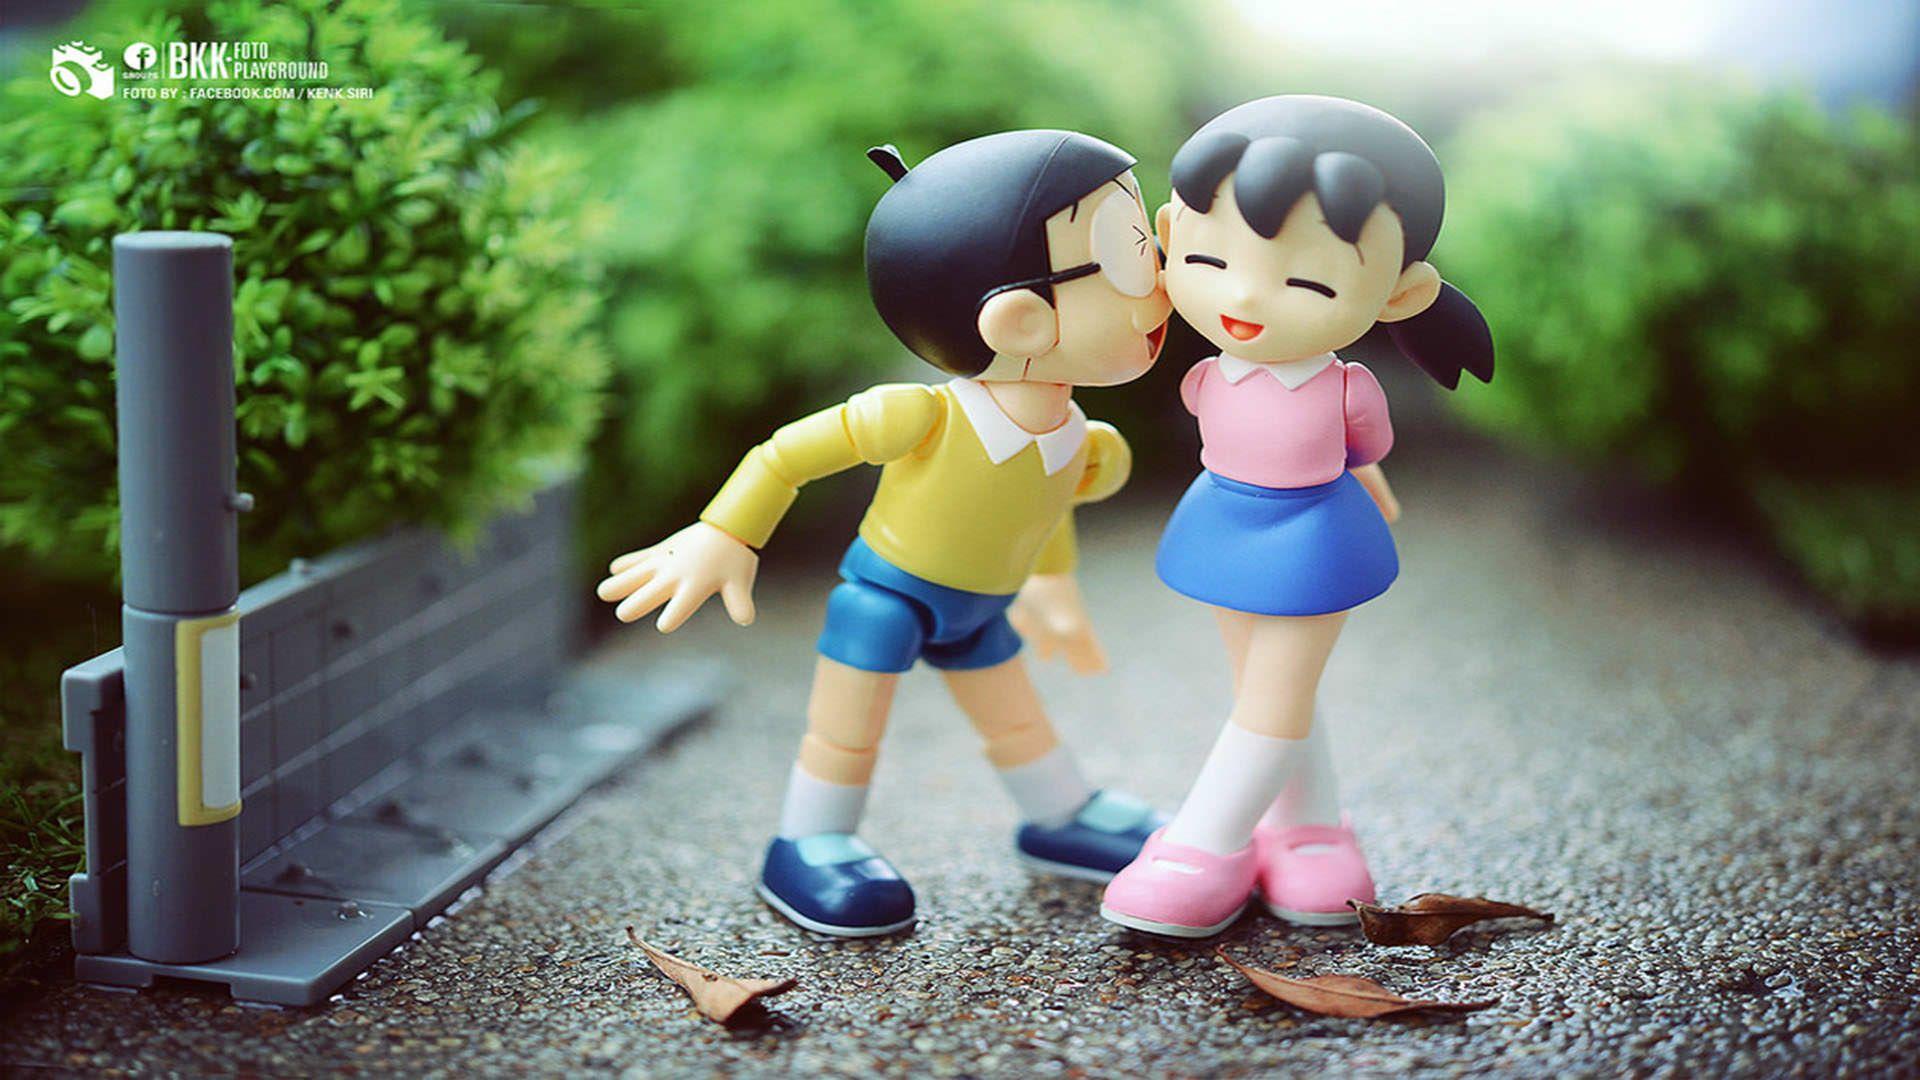 Nobita Shizuka Love Wallpapers - Top Free Nobita Shizuka Love Backgrounds -  WallpaperAccess